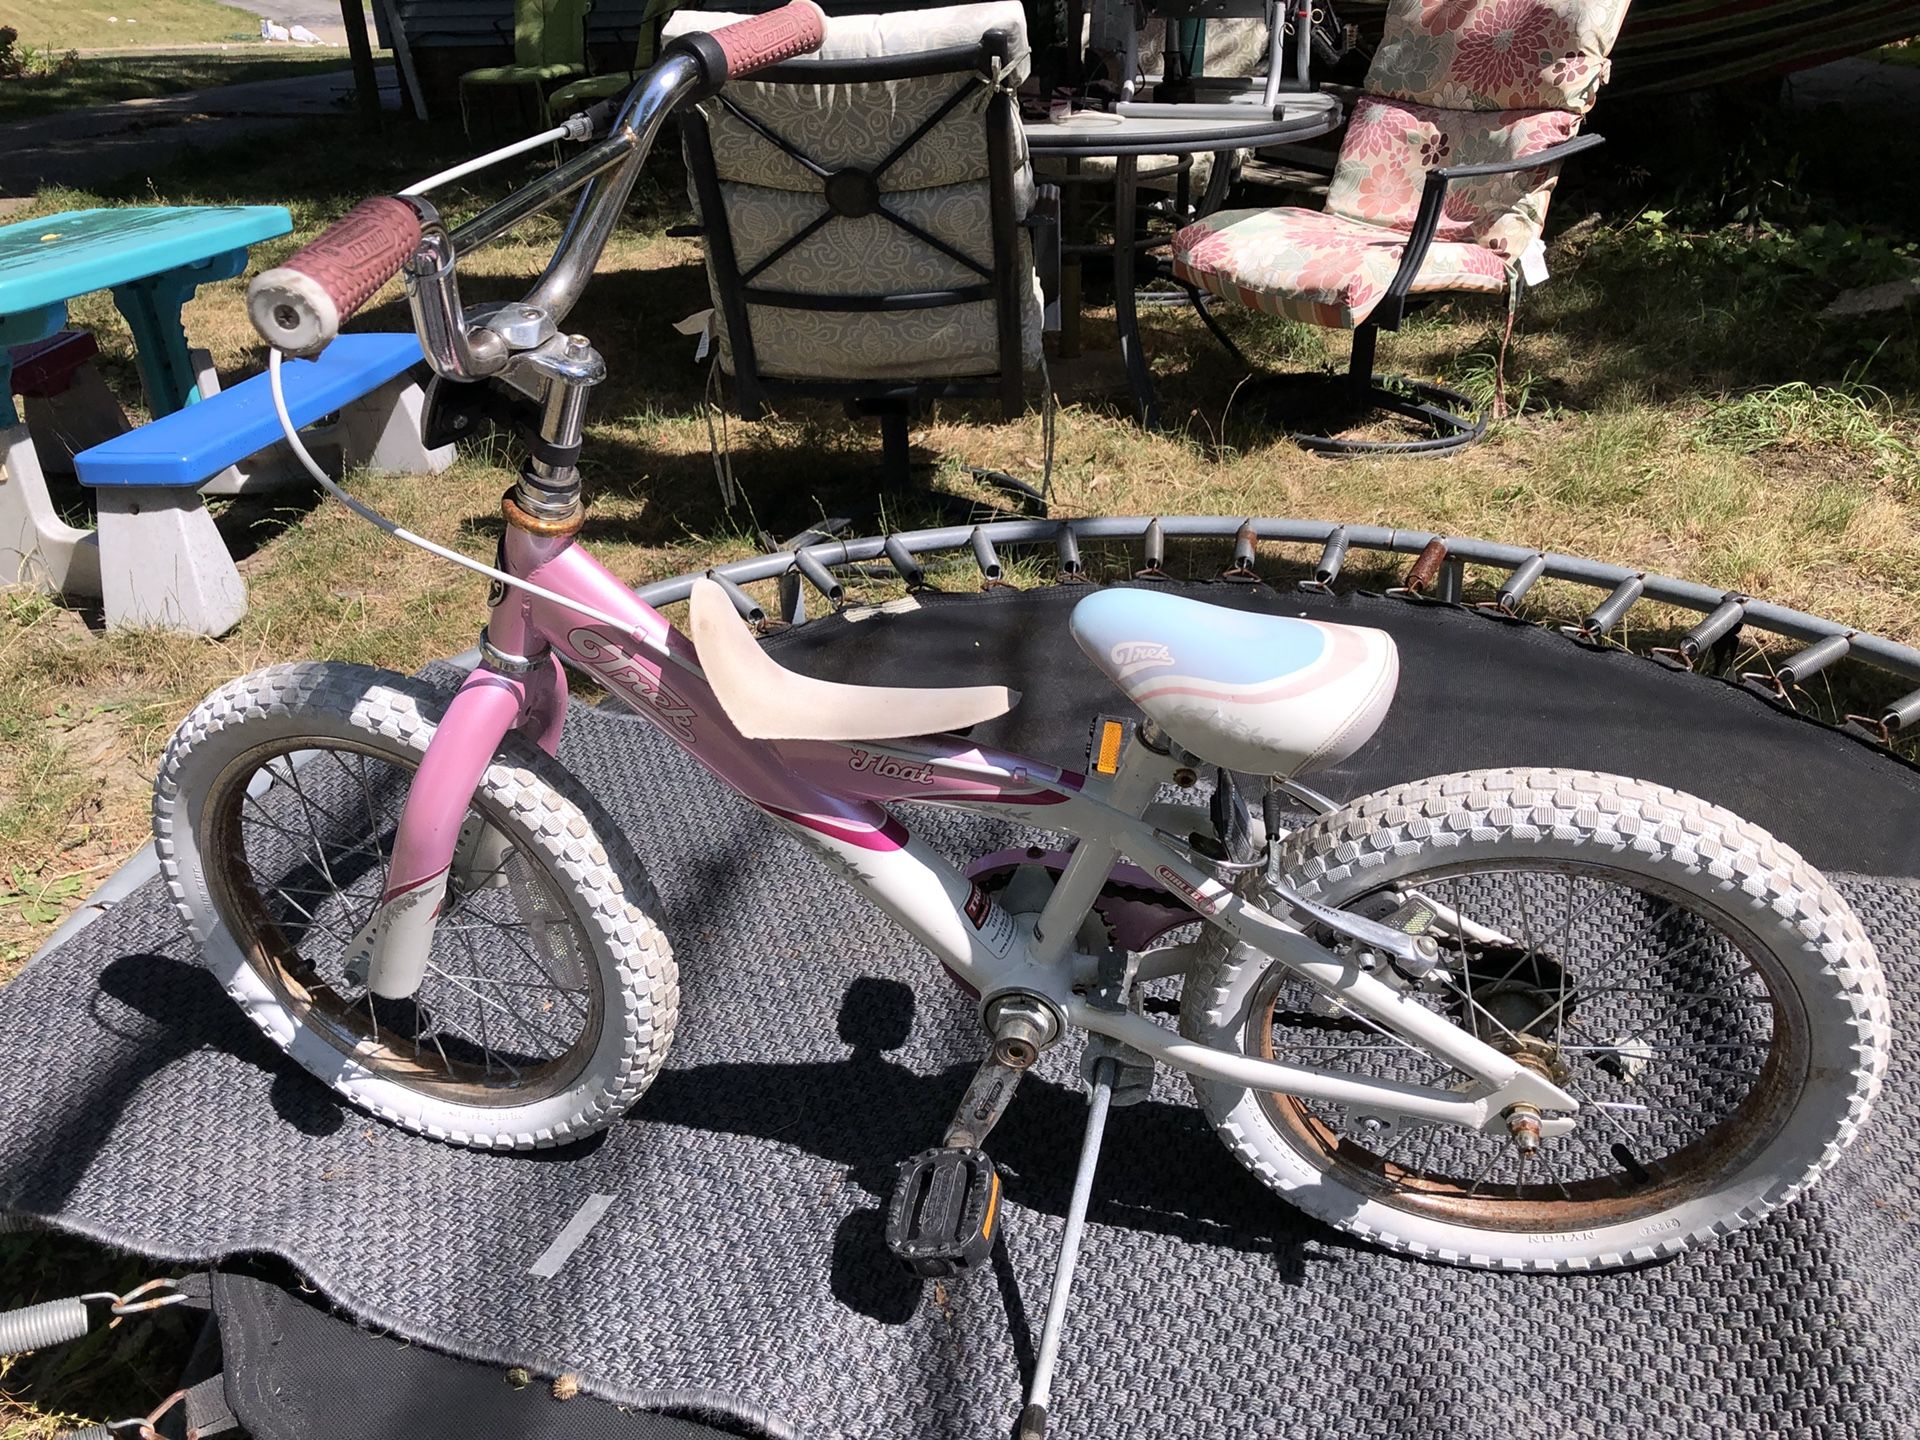 16” Girls Trek Bike